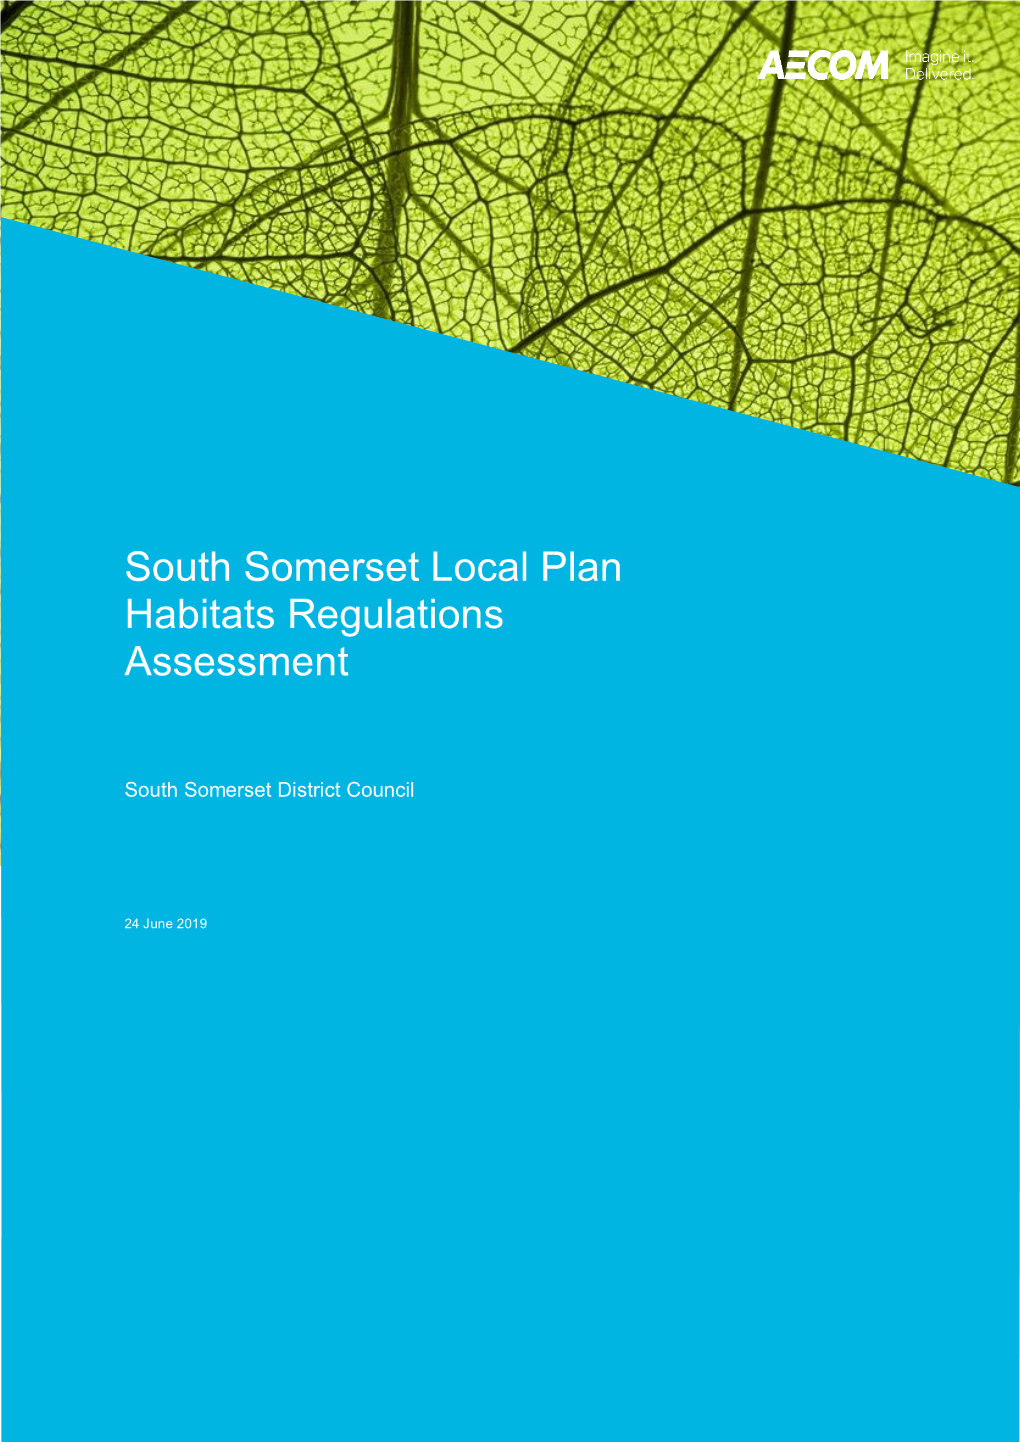 South Somerset Local Plan HRA 27062019